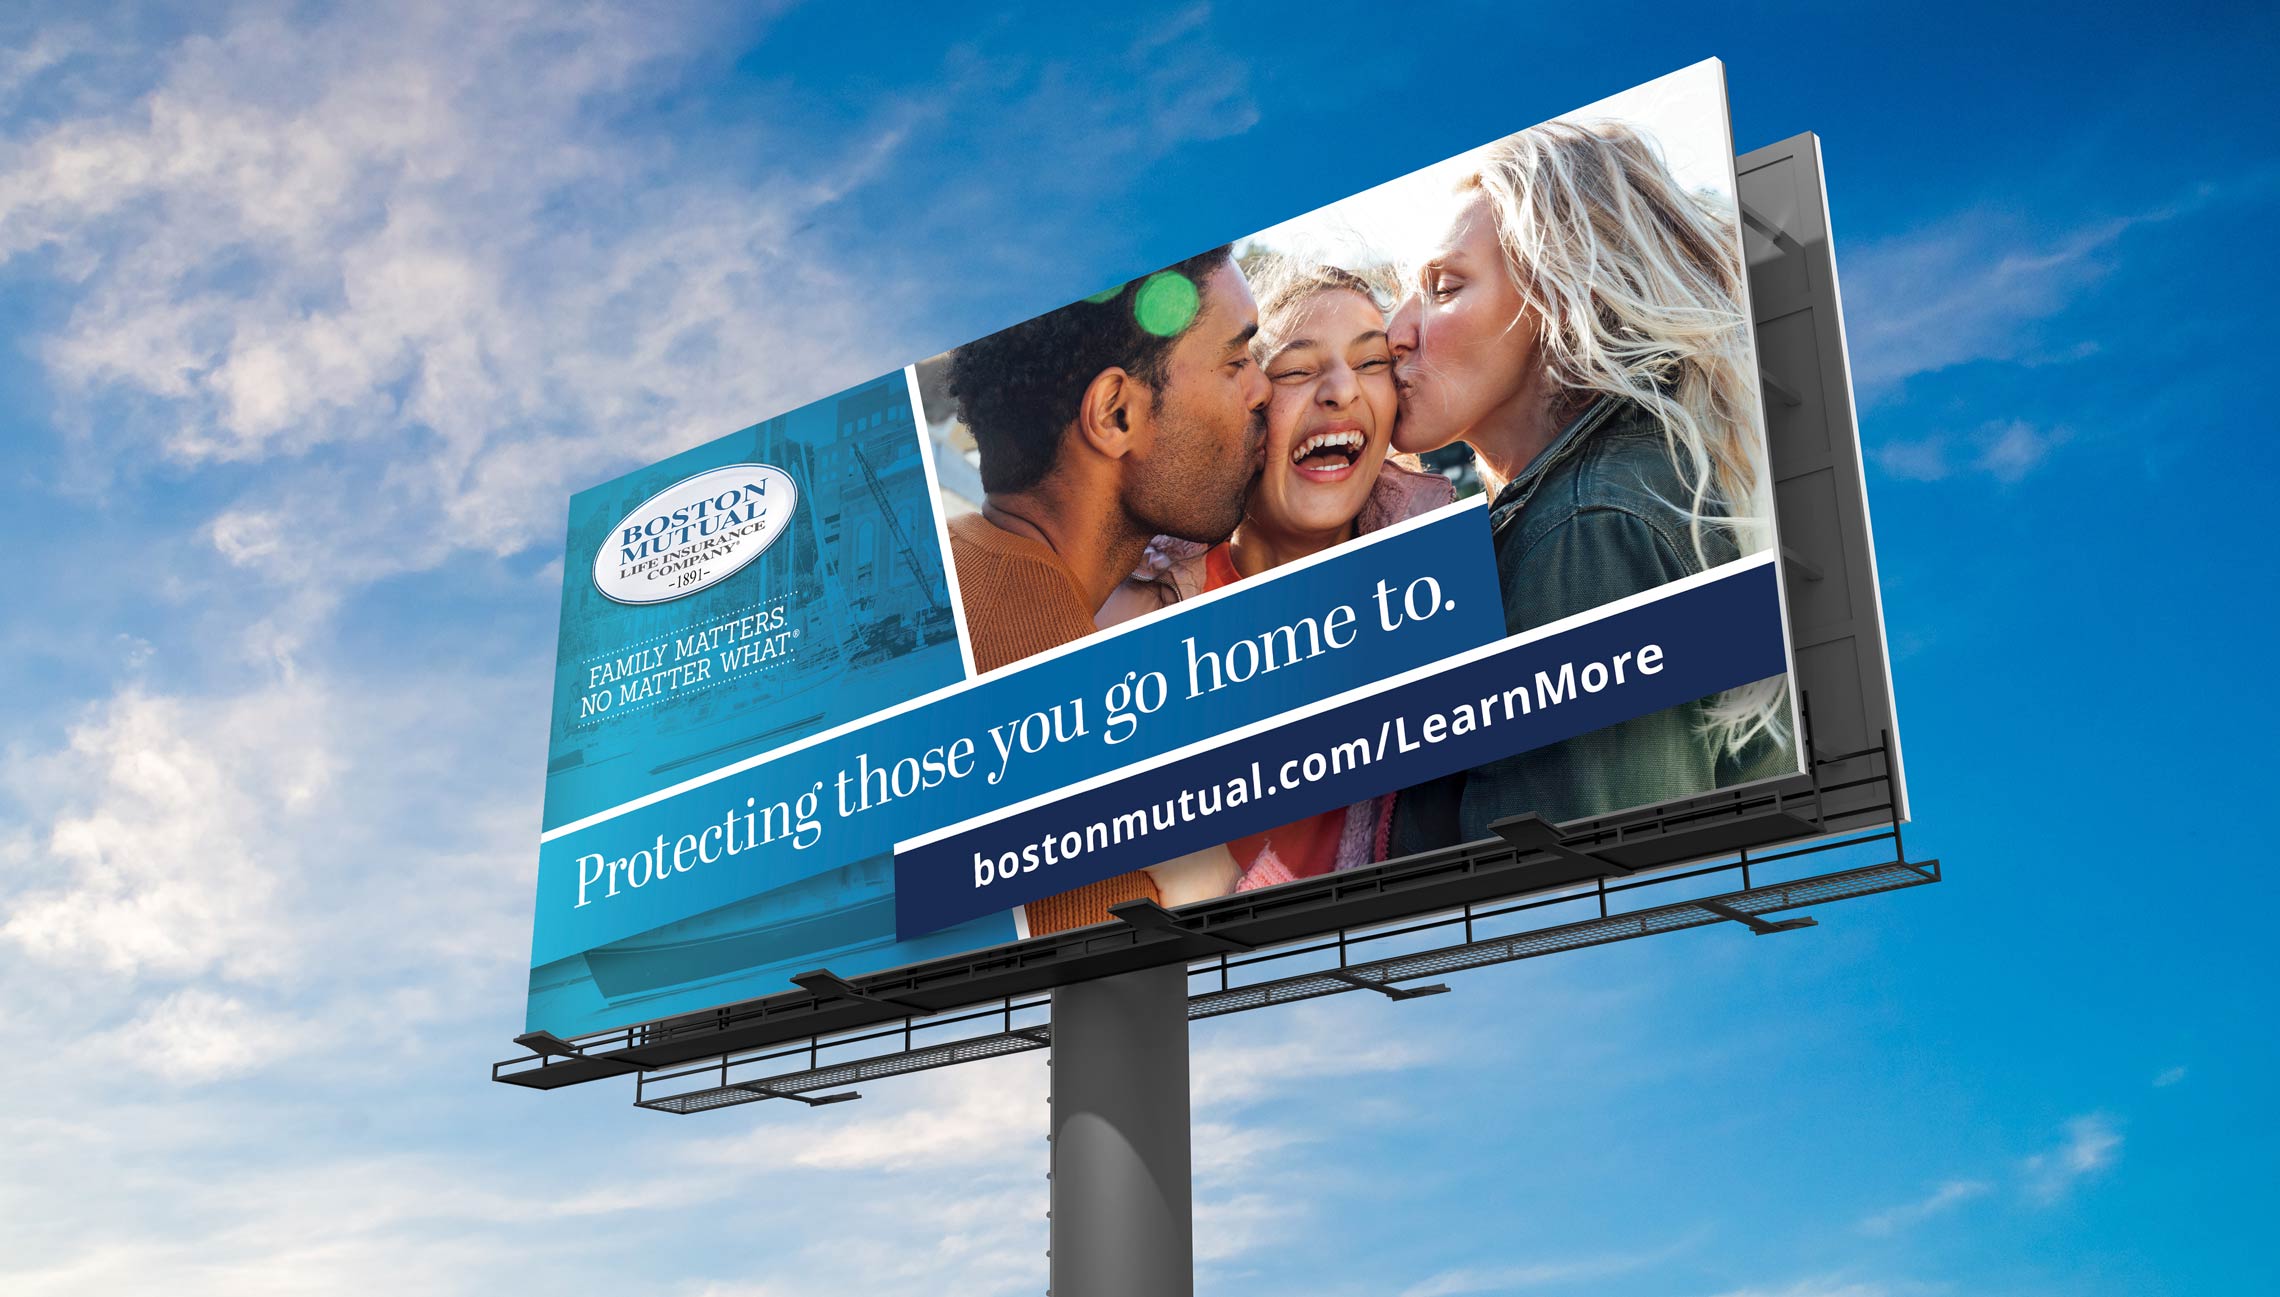 boston mutual billboard ad campaign